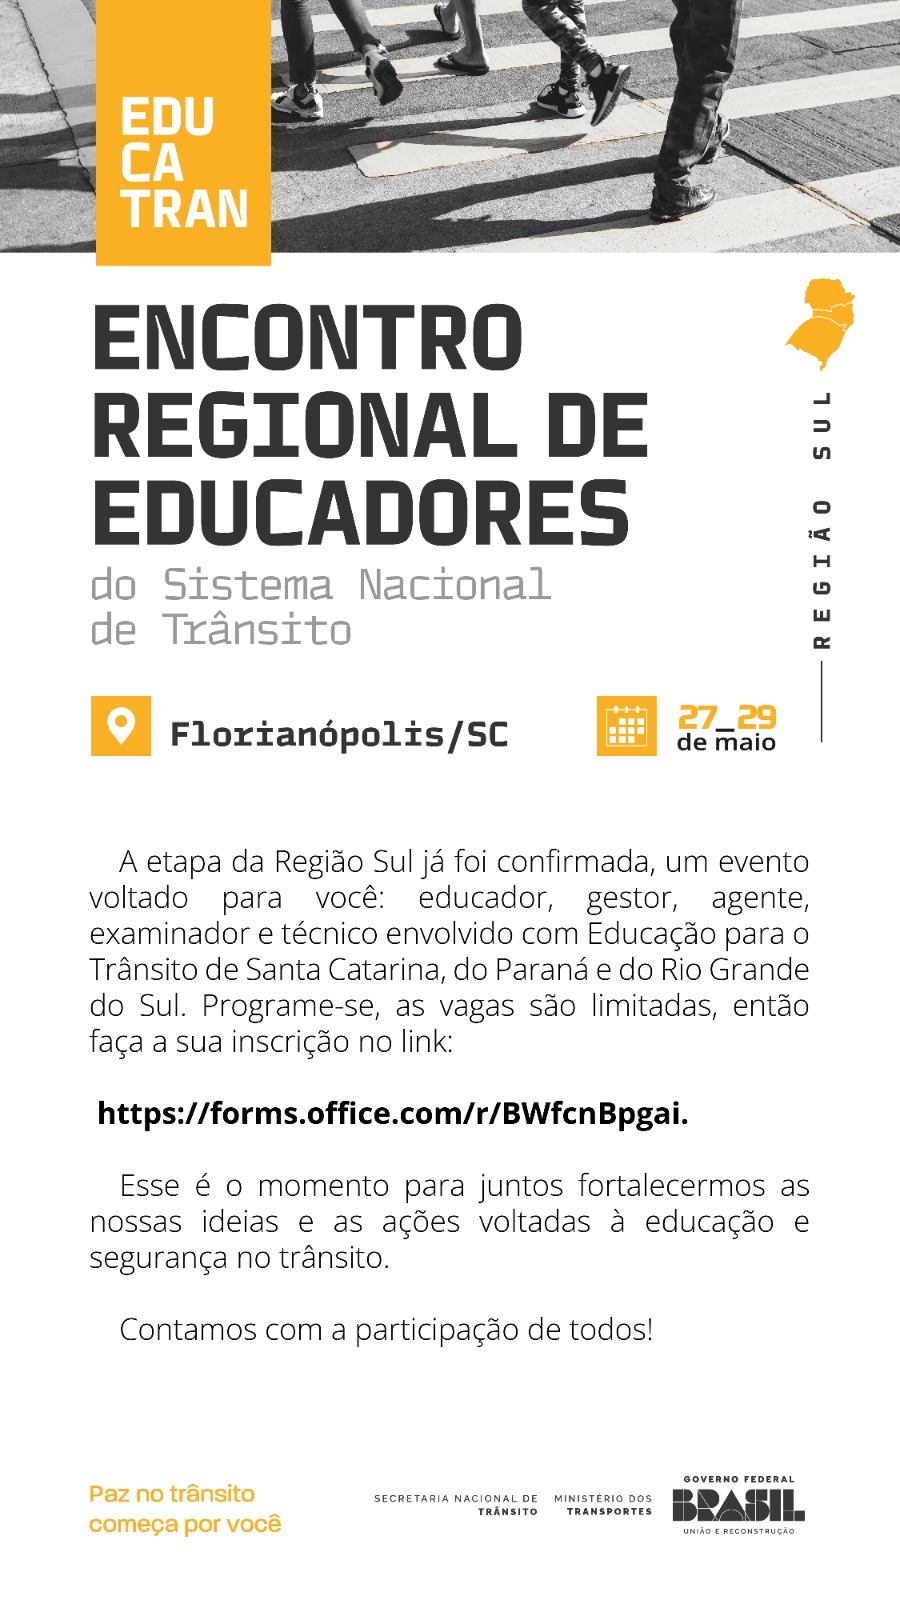 EDUCATRAN-ENCONTRO REGIONAL DE EDUCADORES